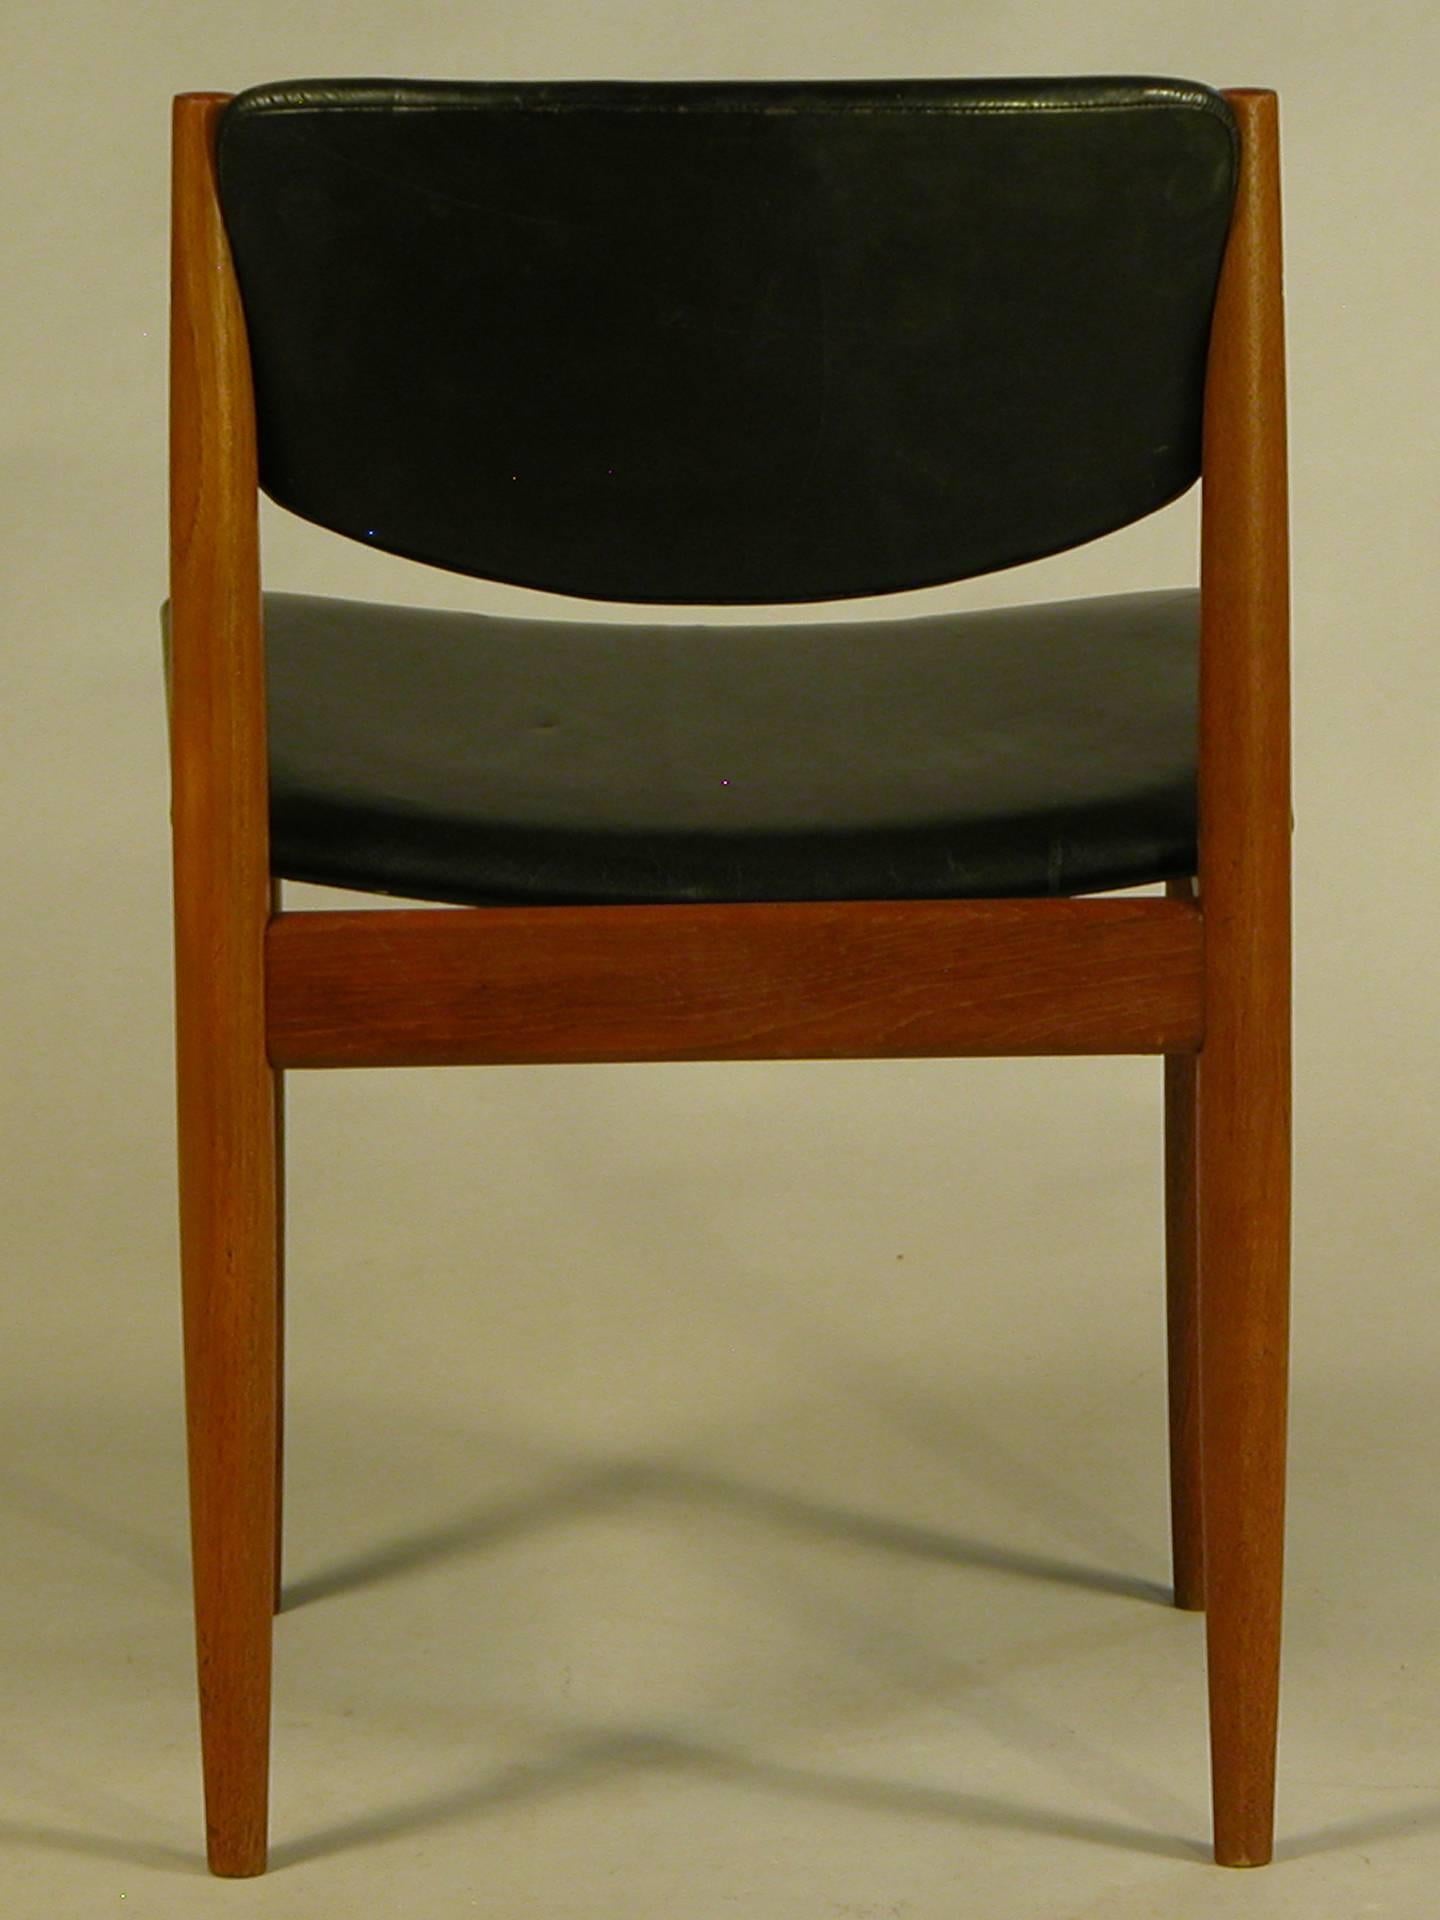 Woodwork 1960s Finn Juhl Model 198 Dining Chair in Teak and Black Leather - France & Sonn